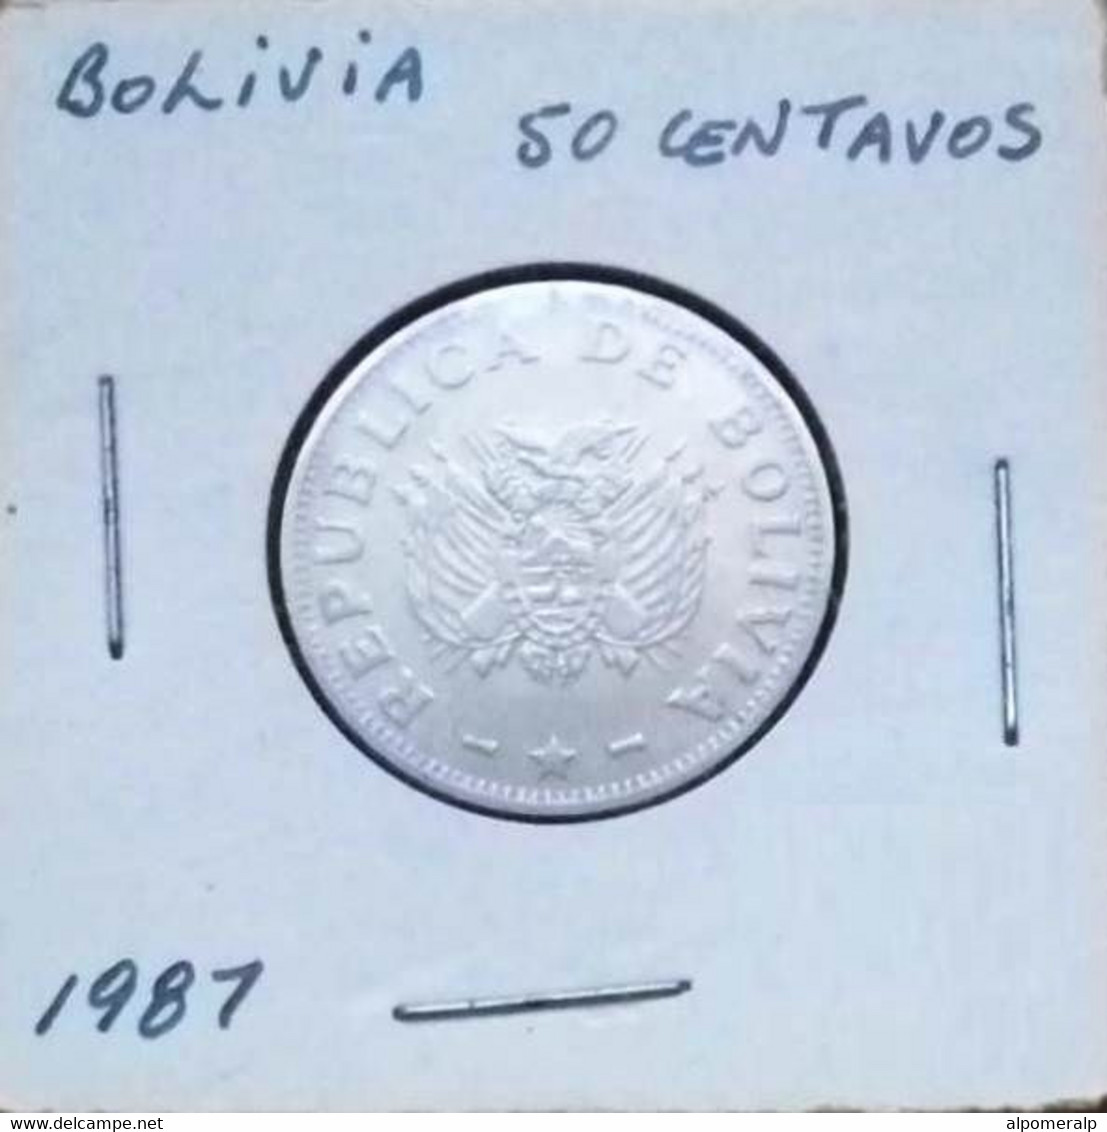 Bolivia 1987 - 50 Centavos - Bolivie